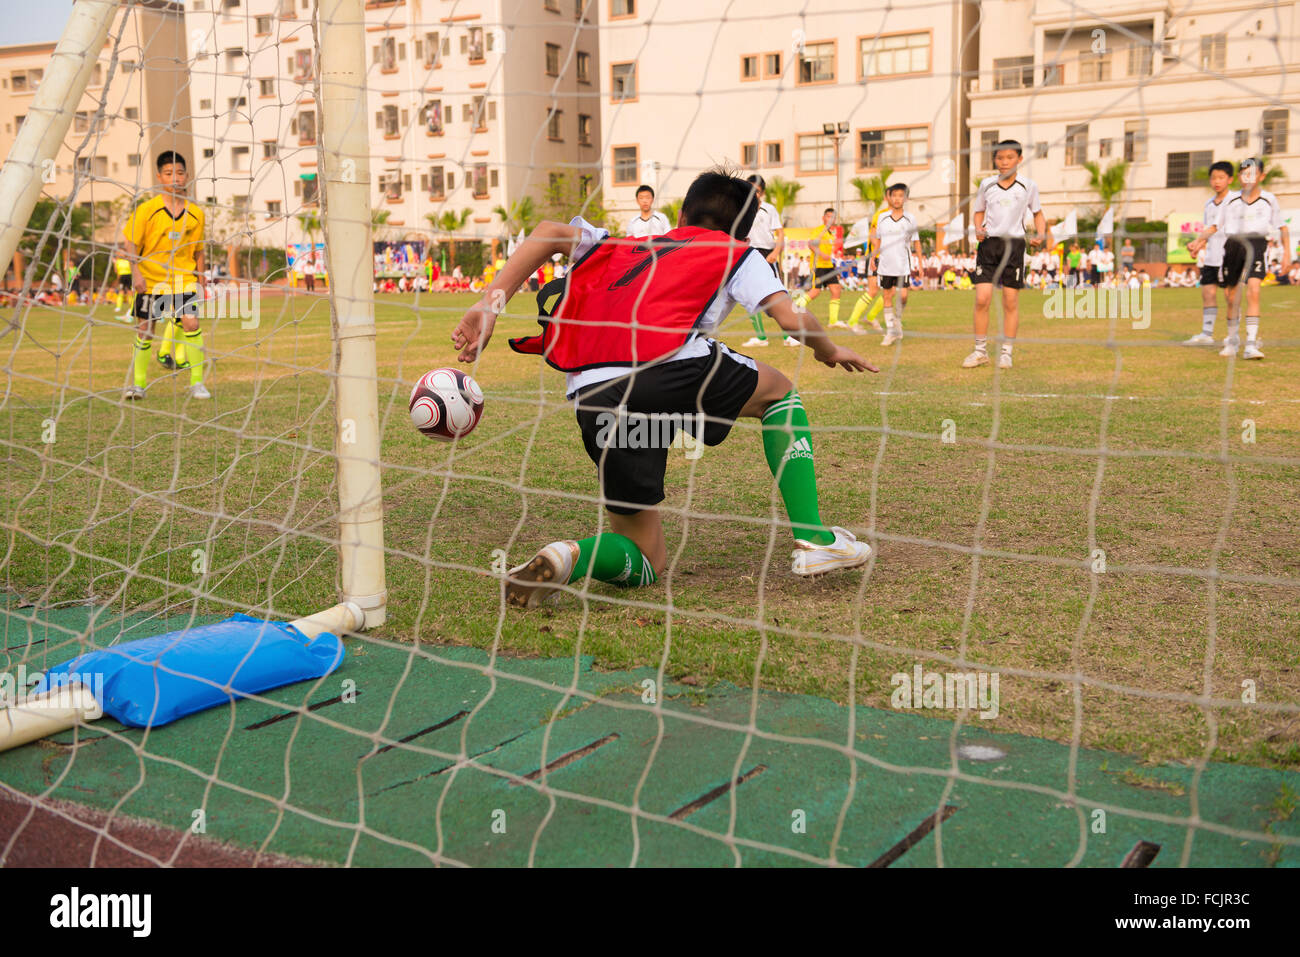 ZHONGSHAN, CHINA - Kinder spielen am 19. März 2015 in Zhongshan, China im freundlichen Fußballspiel 19.März. Stockfoto